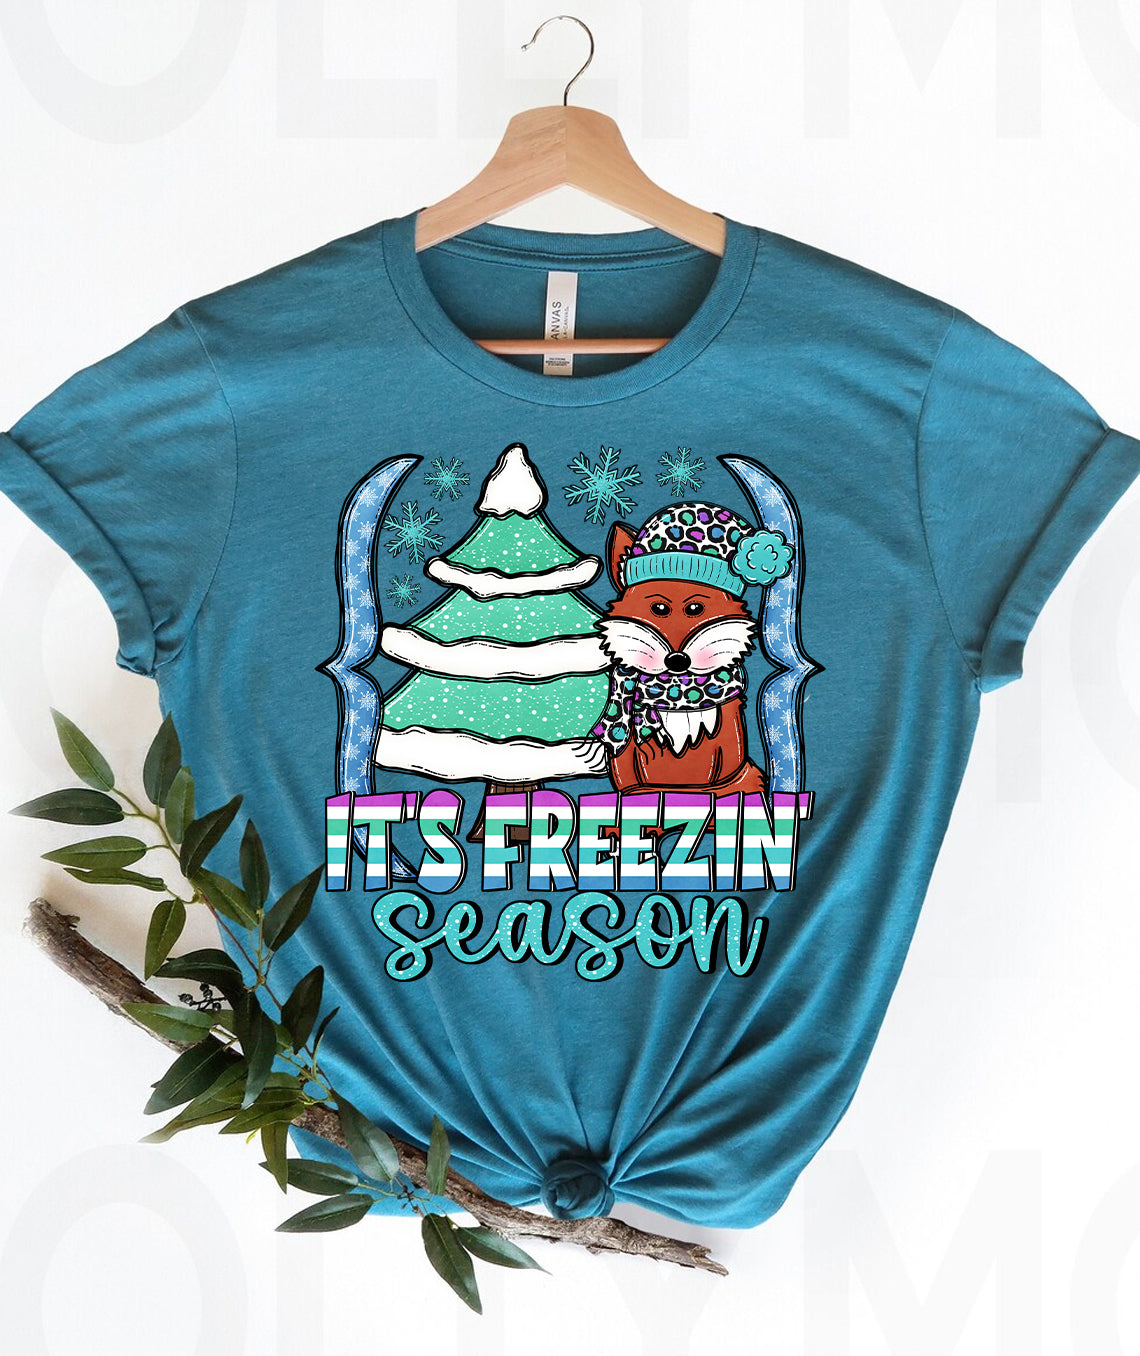 It's Freezin Season Graphic Tee